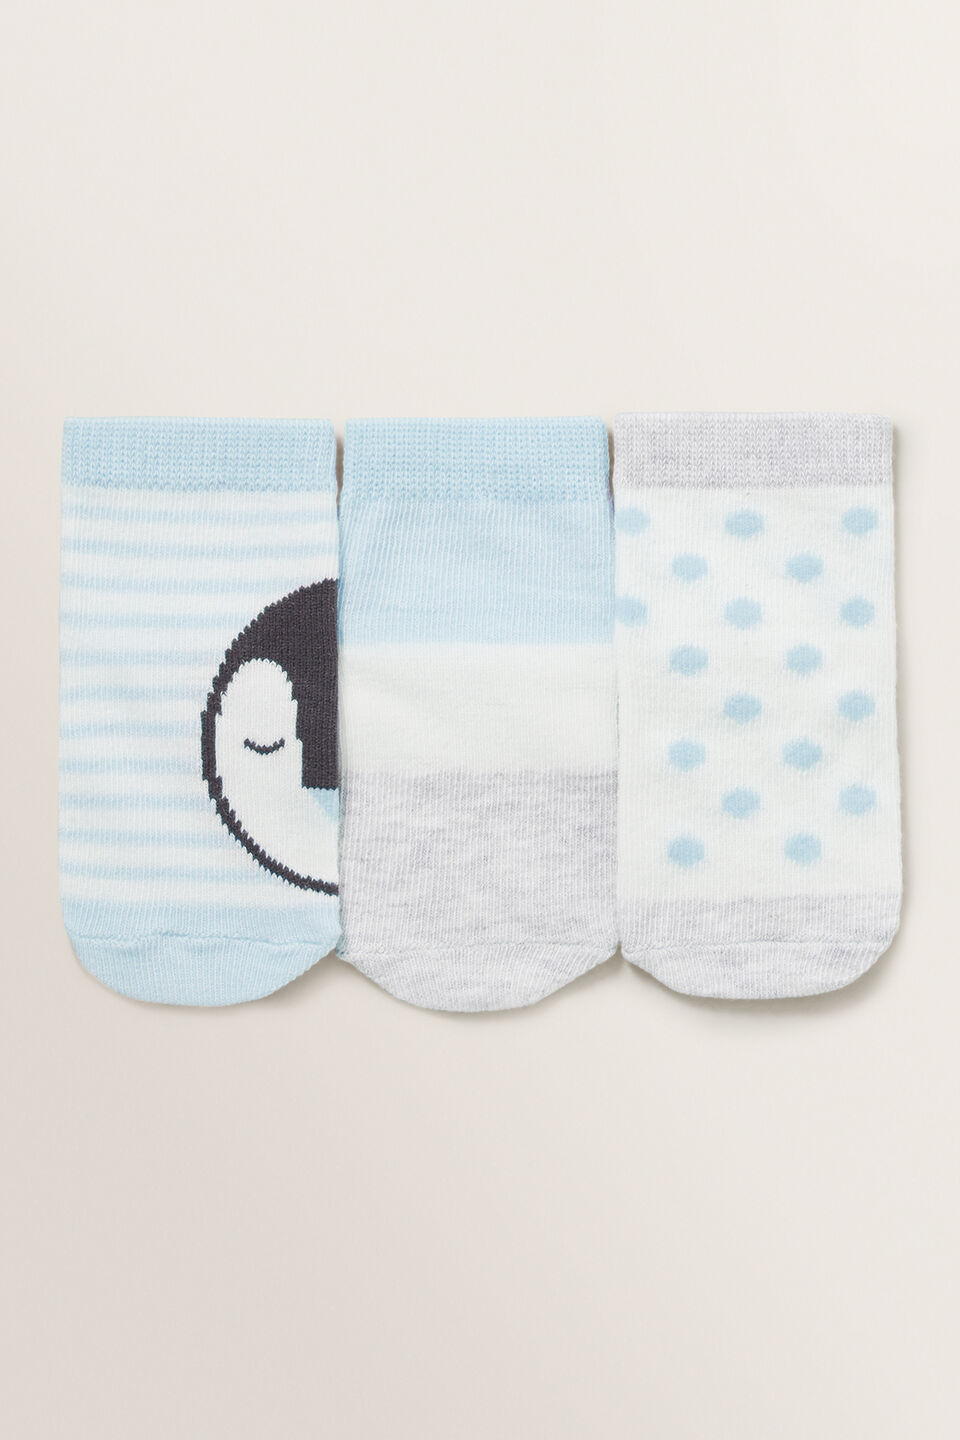 Penguin 3 Pack Socks  